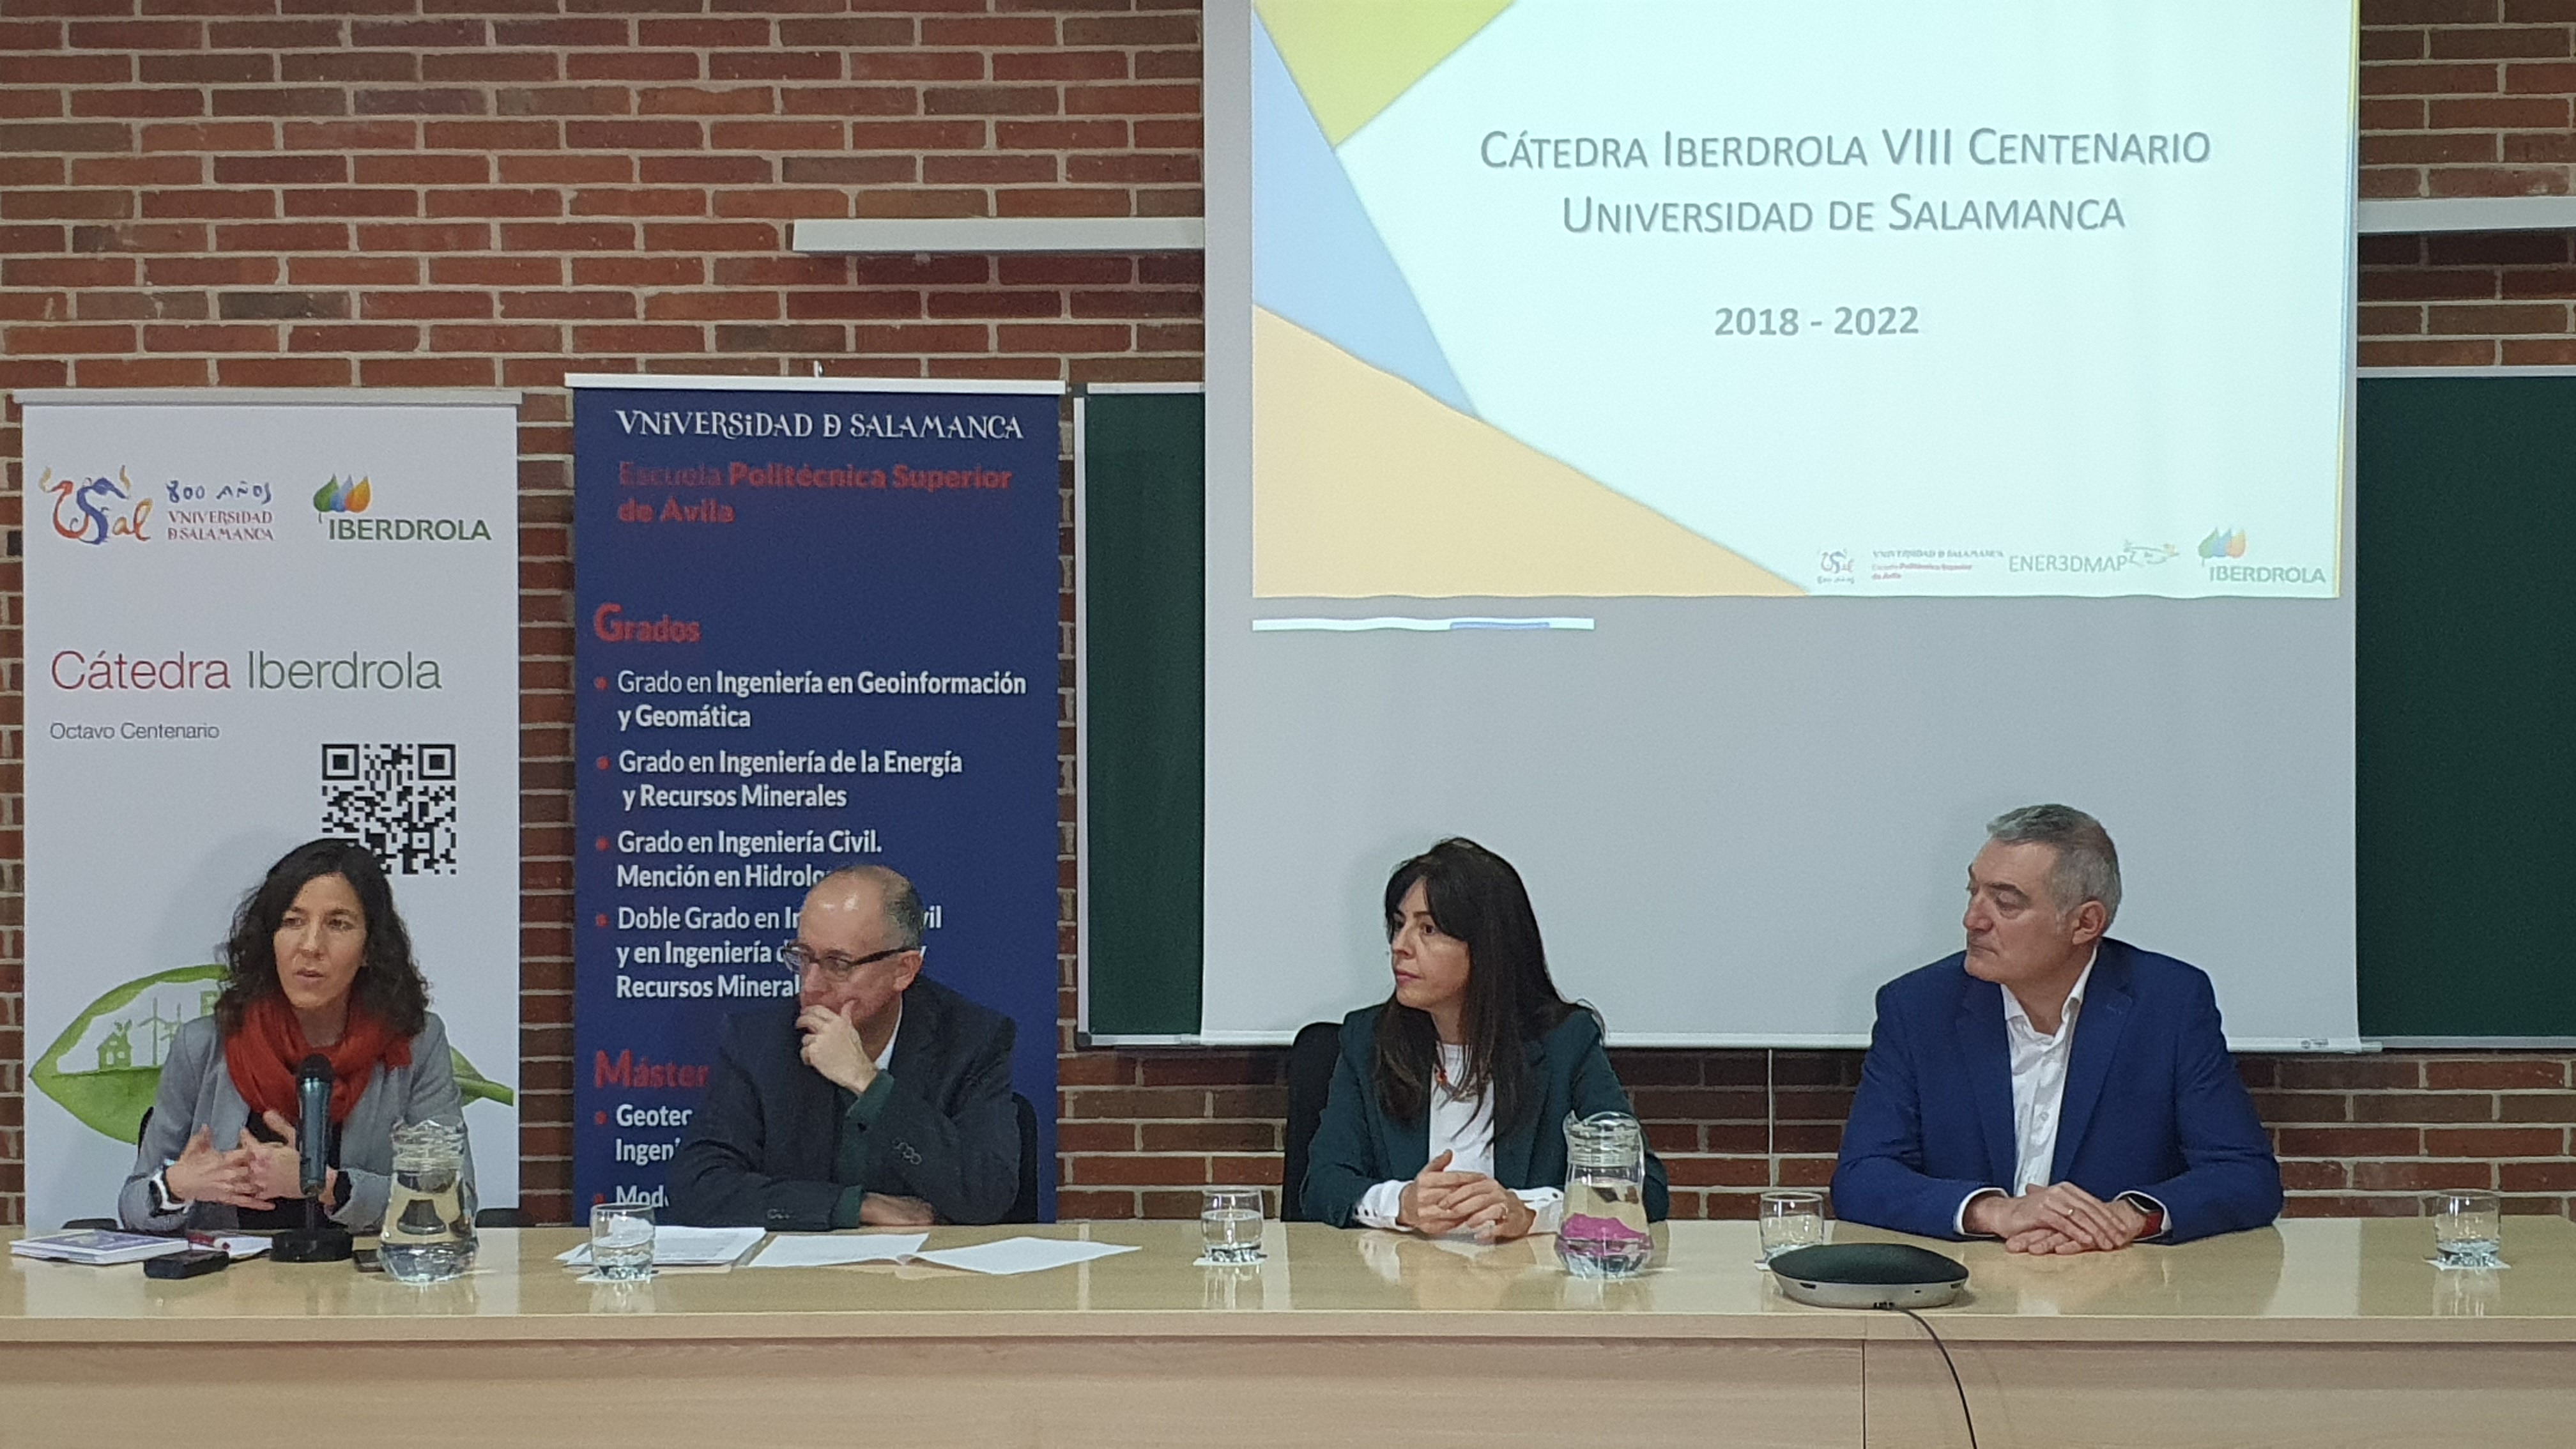  La Cátedra Iberdrola-Universidad de Salamanca cierra un proyecto de éxito en el ámbito científico y académico